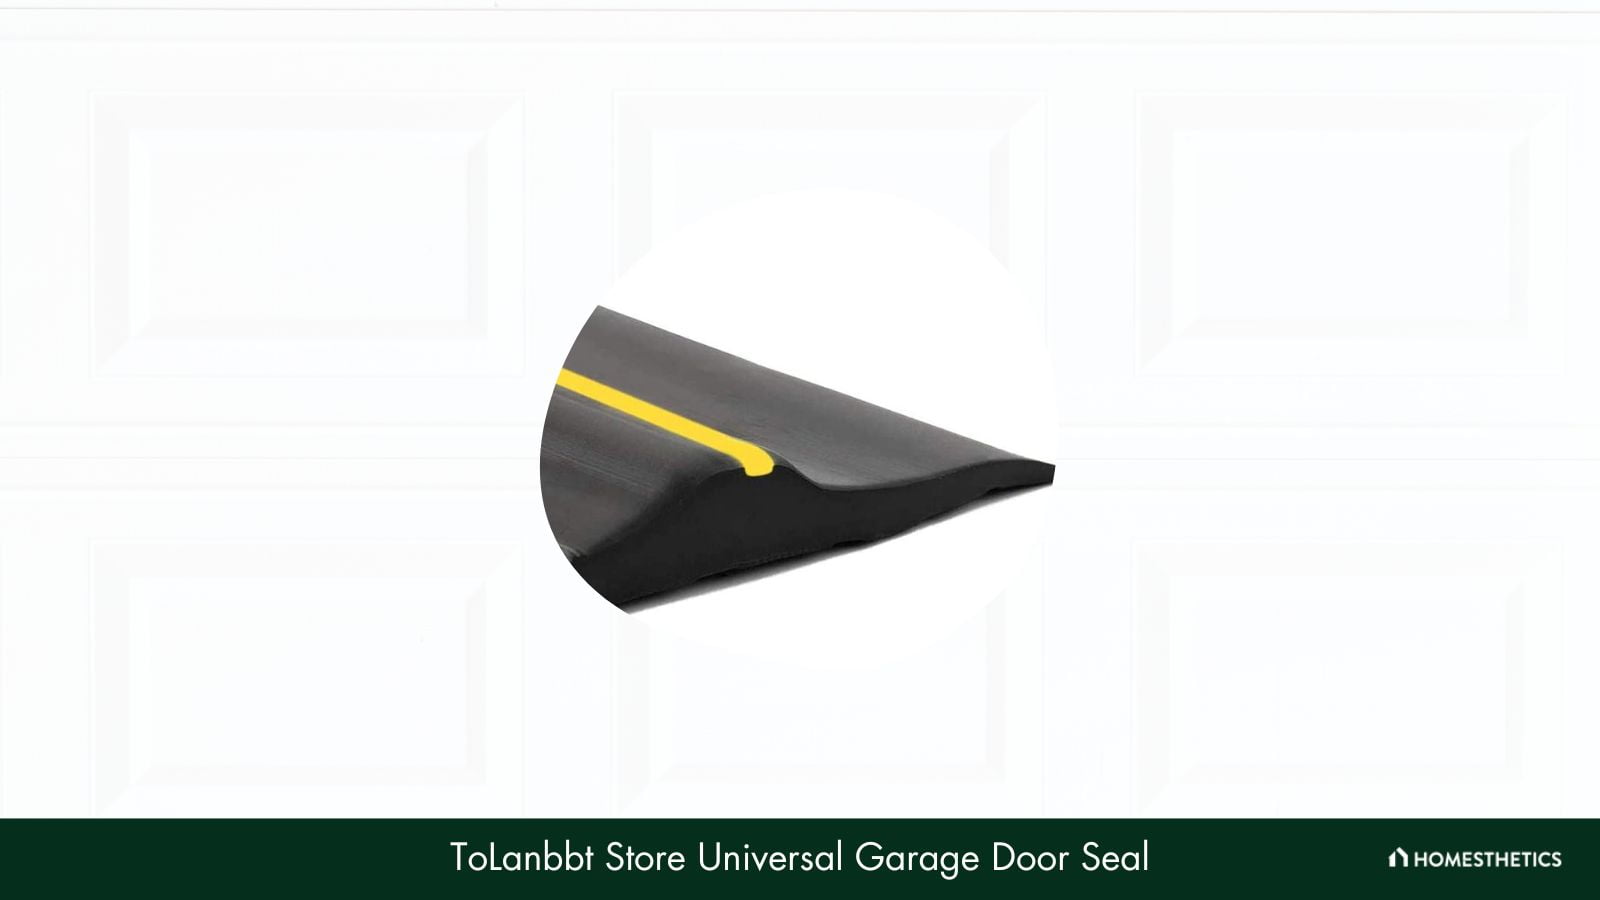 ToLanbbt Store Universal Garage Door Seal